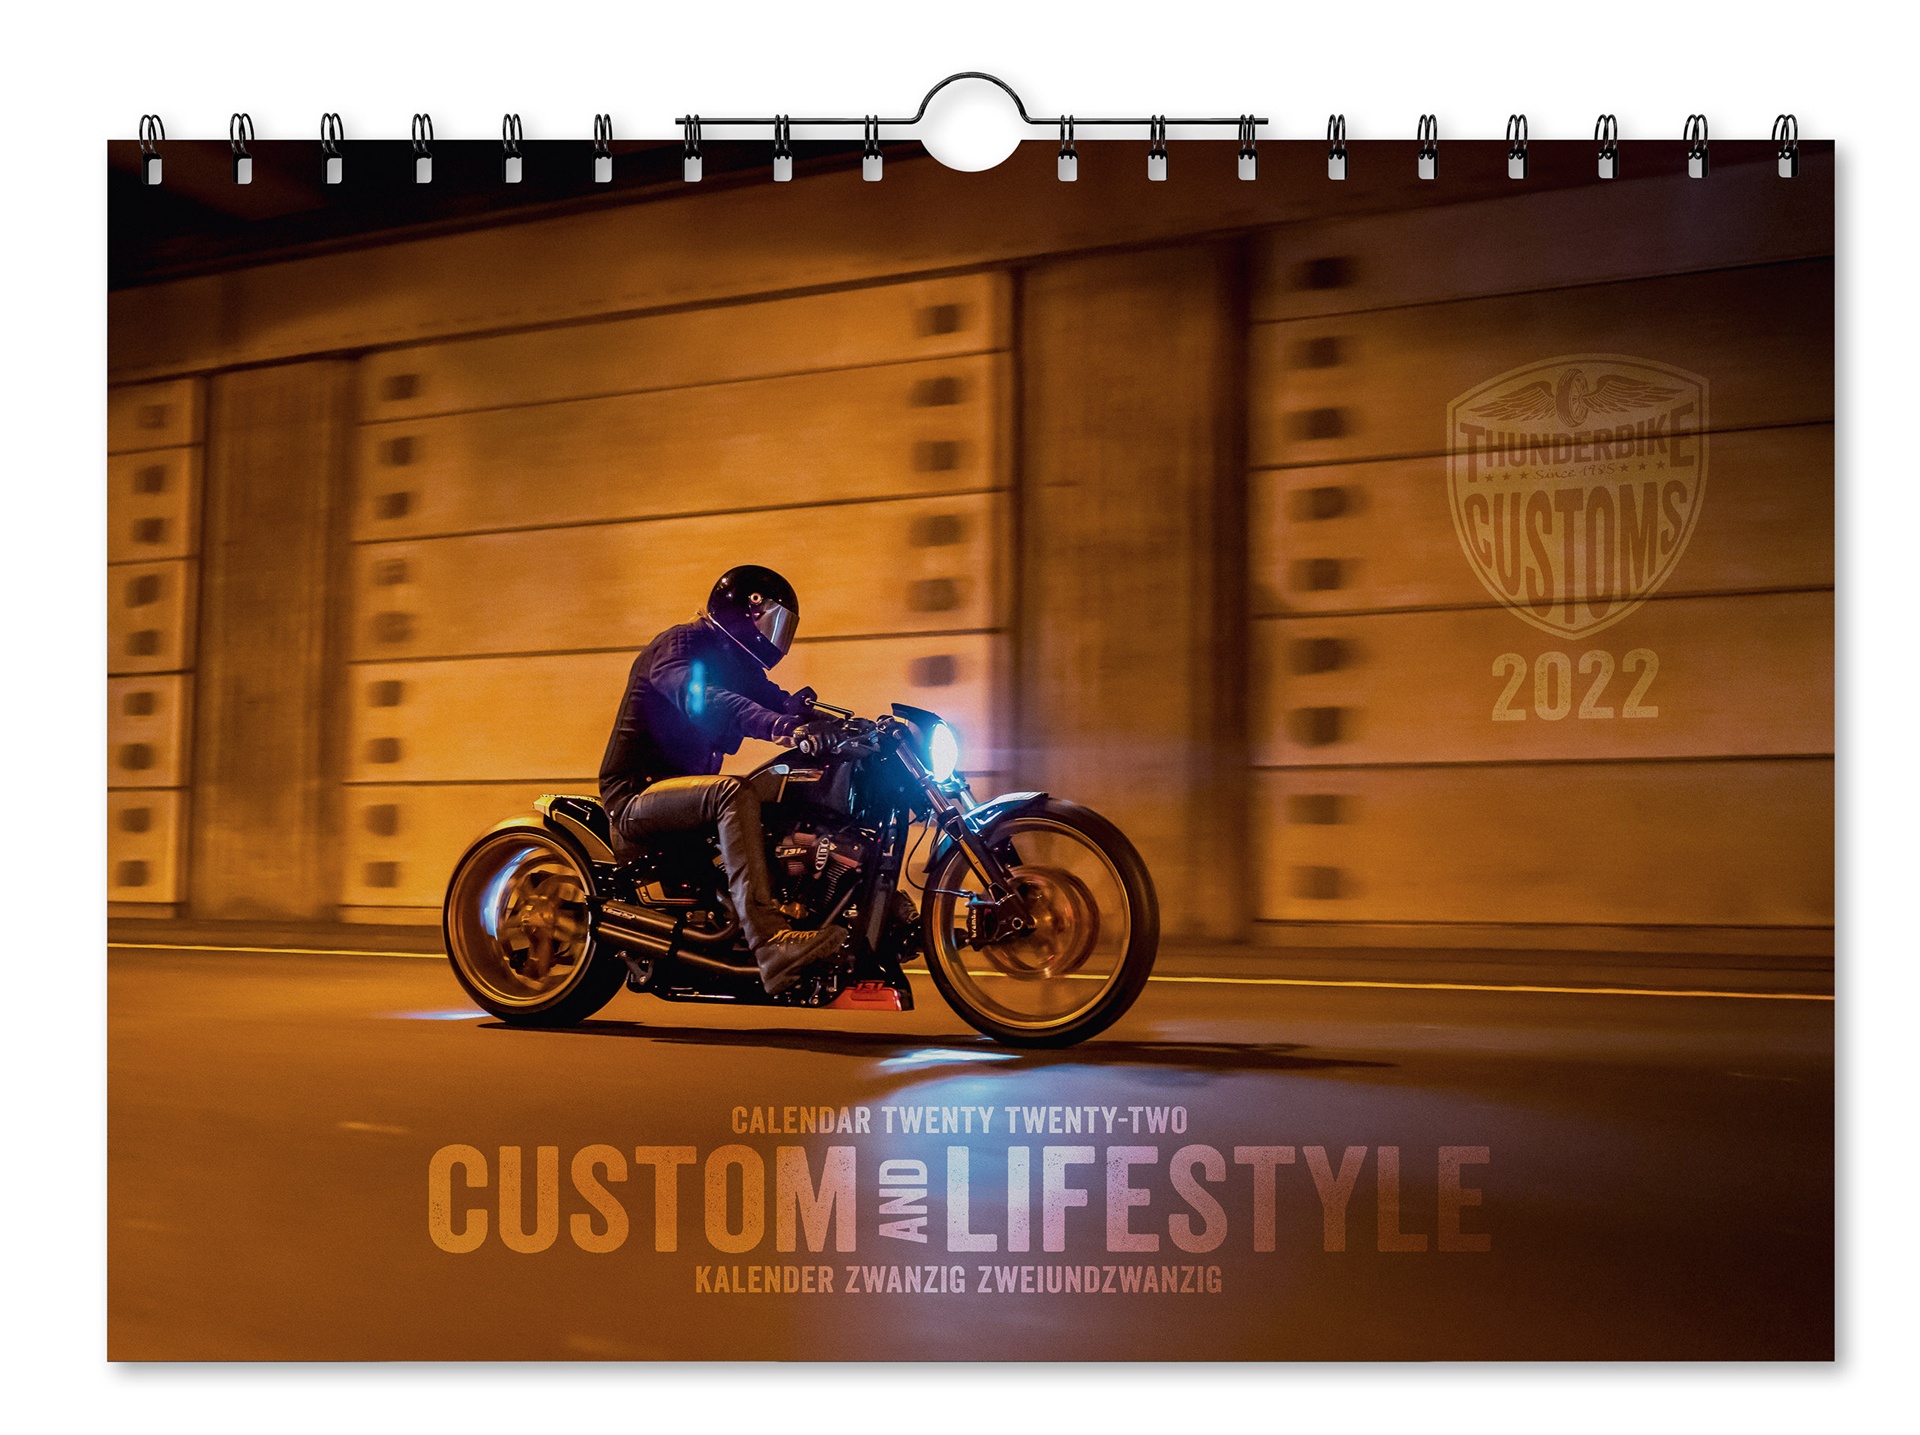 Harley Davidson Calendar 2022 Thunderbike Calendar 2022 At Thunderbike Shop